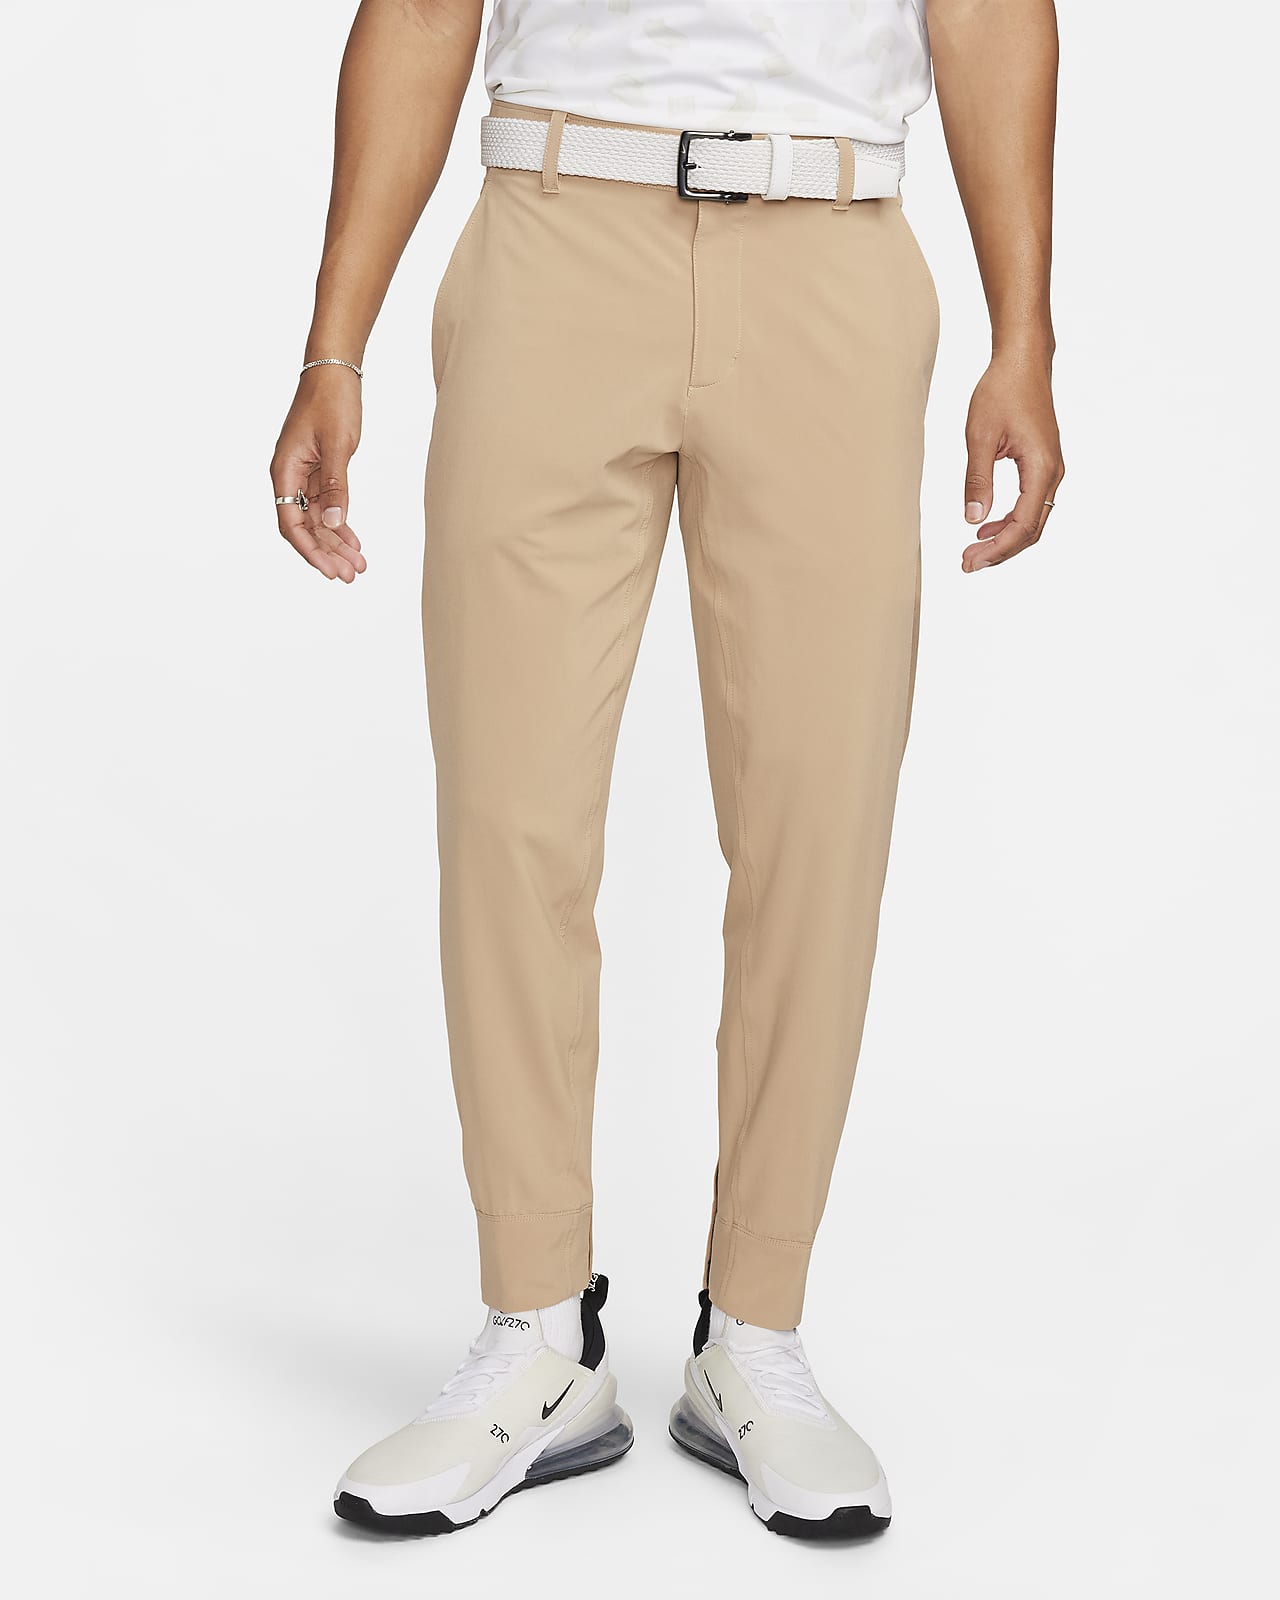 Ανδρικό παντελόνι φόρμας για γκολφ Nike Tour Repel